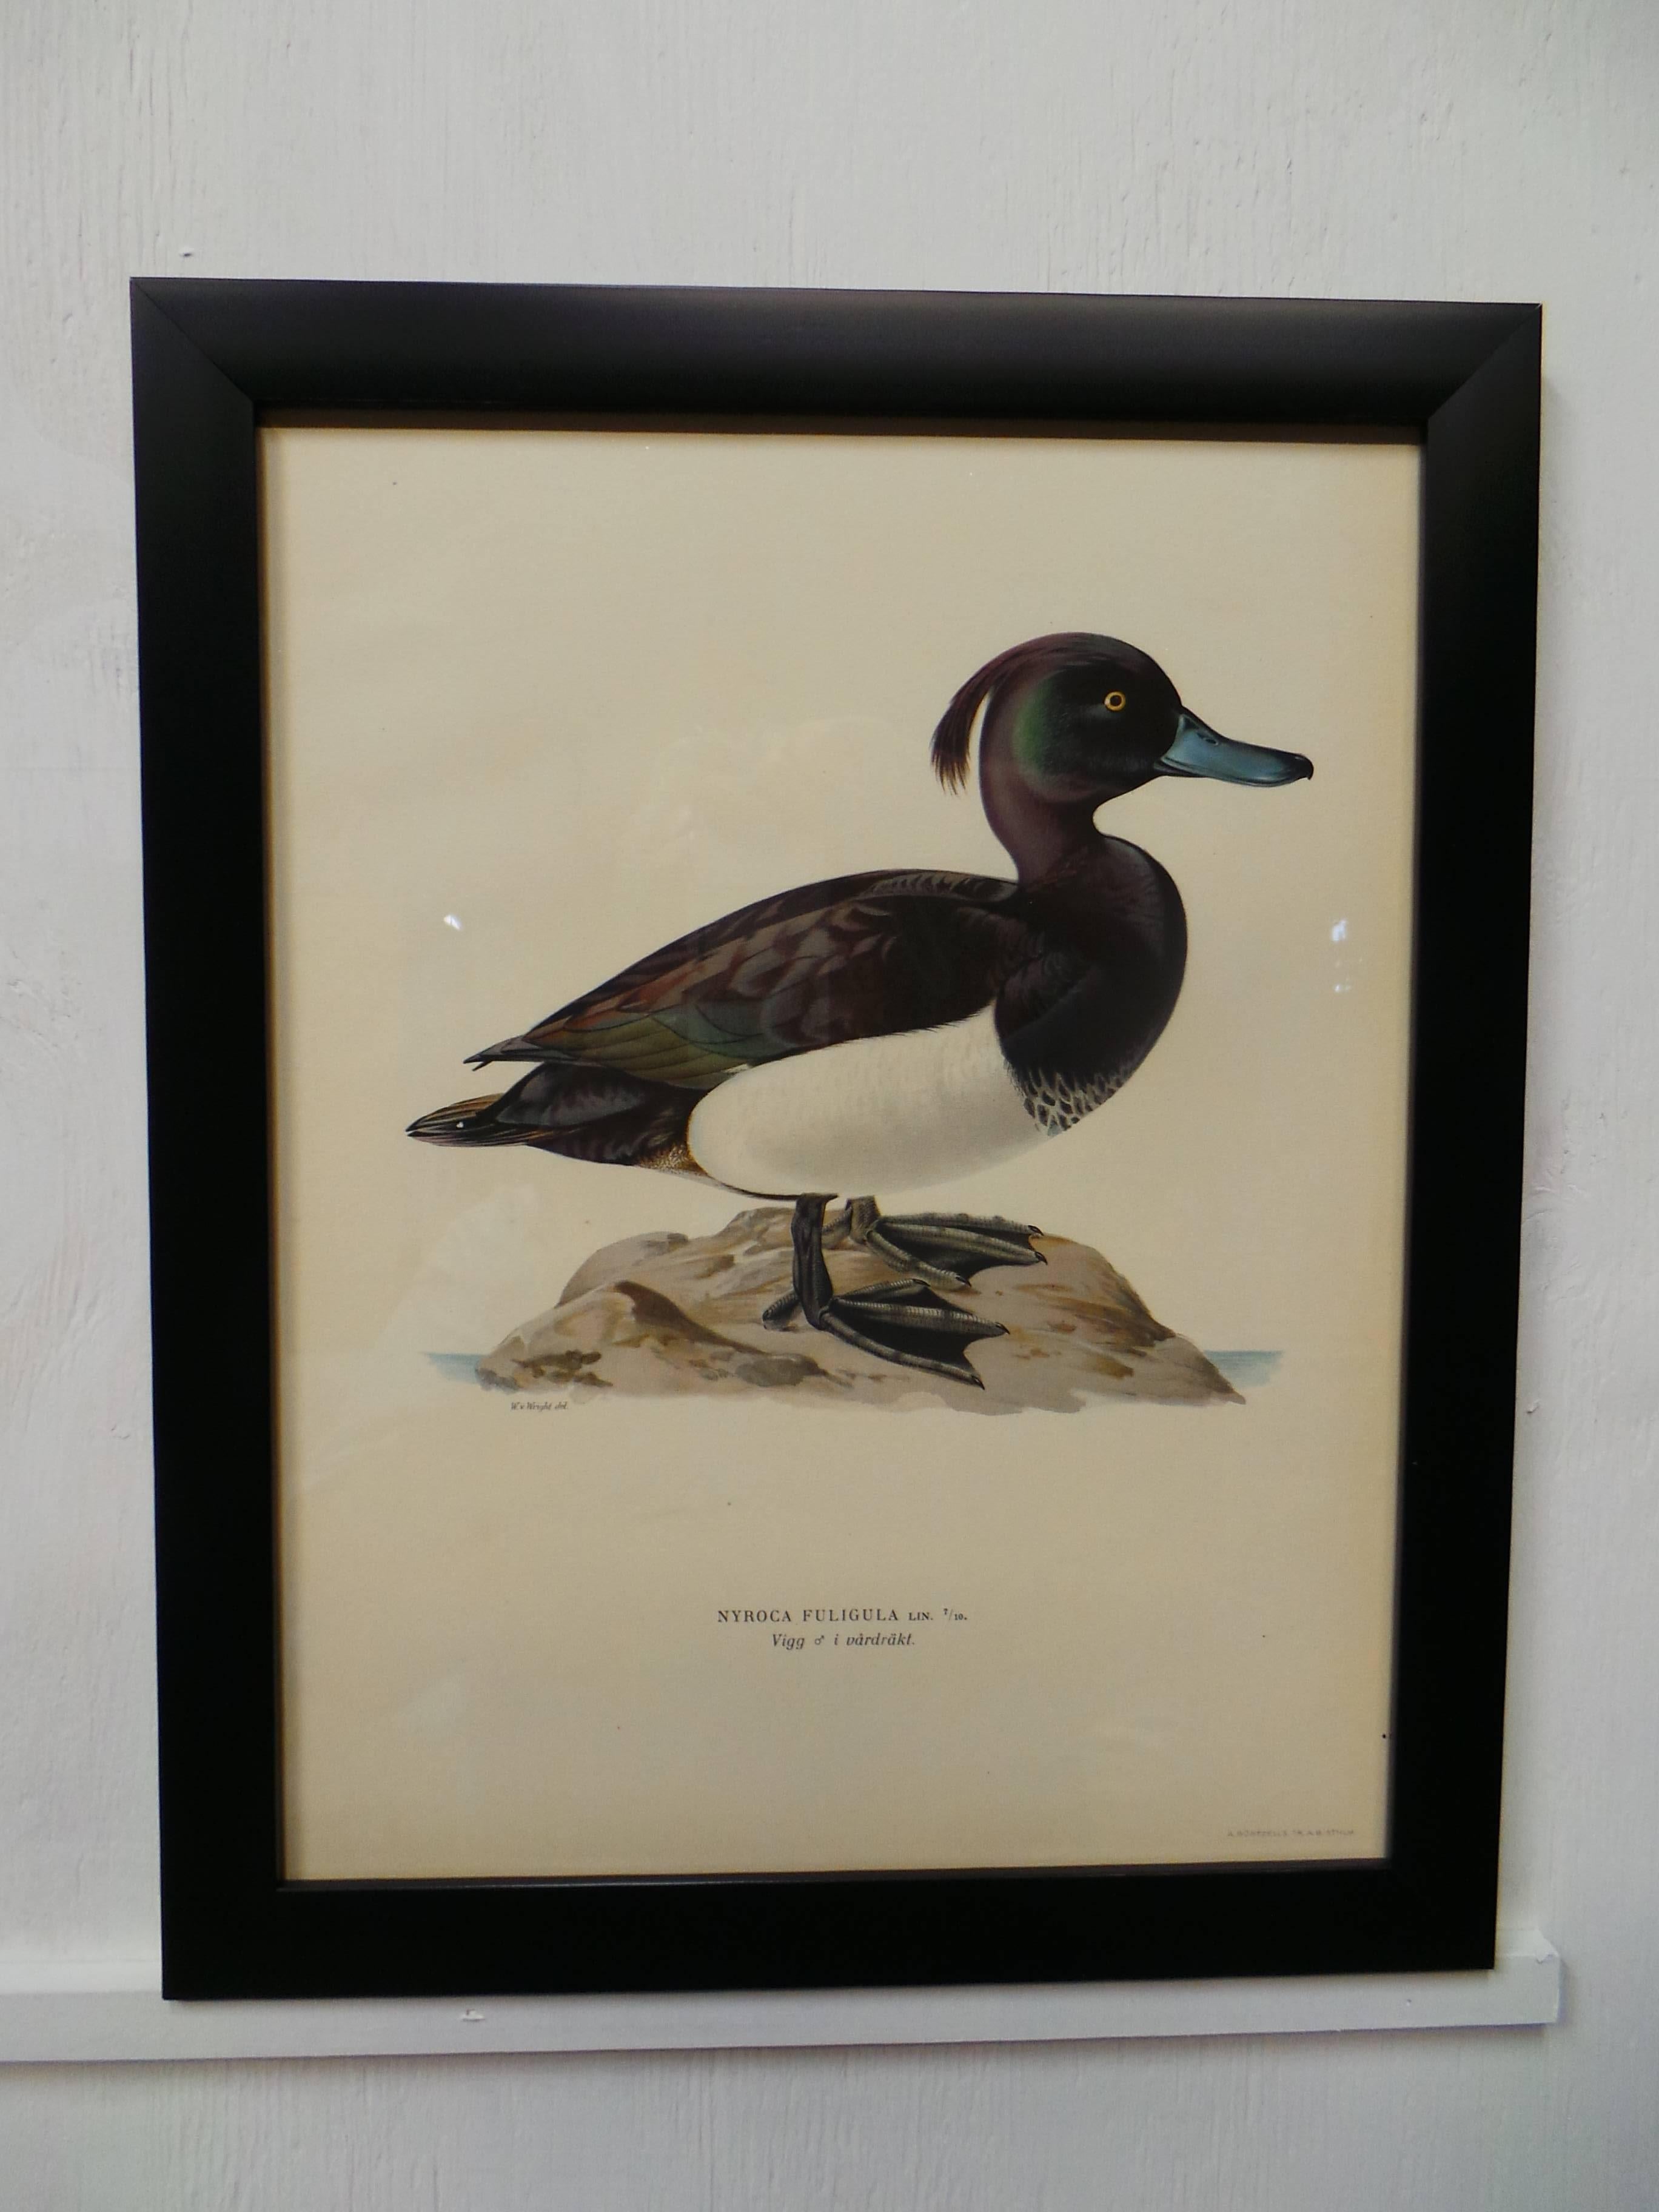 Il s'agit d'un ensemble de quatre impressions d'oiseaux aquatiques suédois encadrées, toutes datées de 1929. Imprimé par Finpappersbrukens Forsalfnings AB. à Stockholm, Suède.
  
       